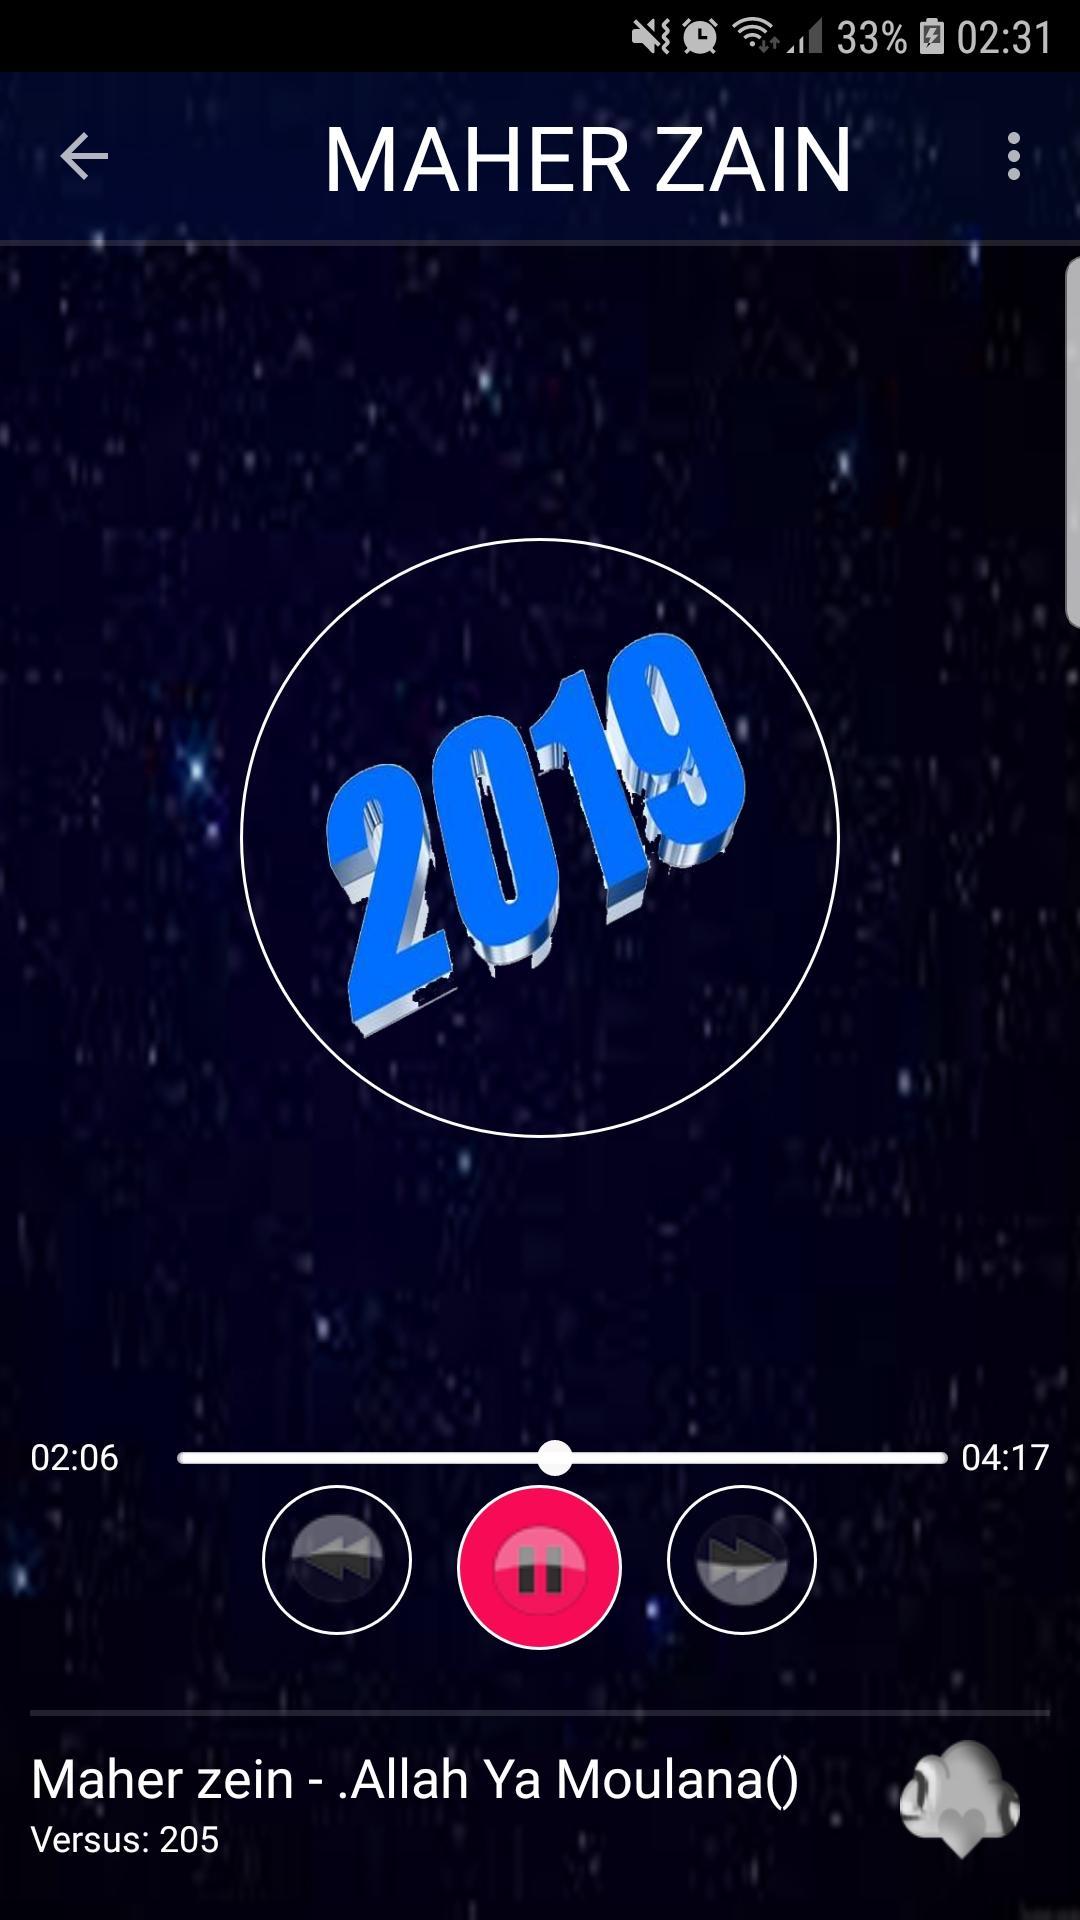 اغاني ماهر زين 2019 بدون نت-Aghani maher zain mp3 APK for Android Download